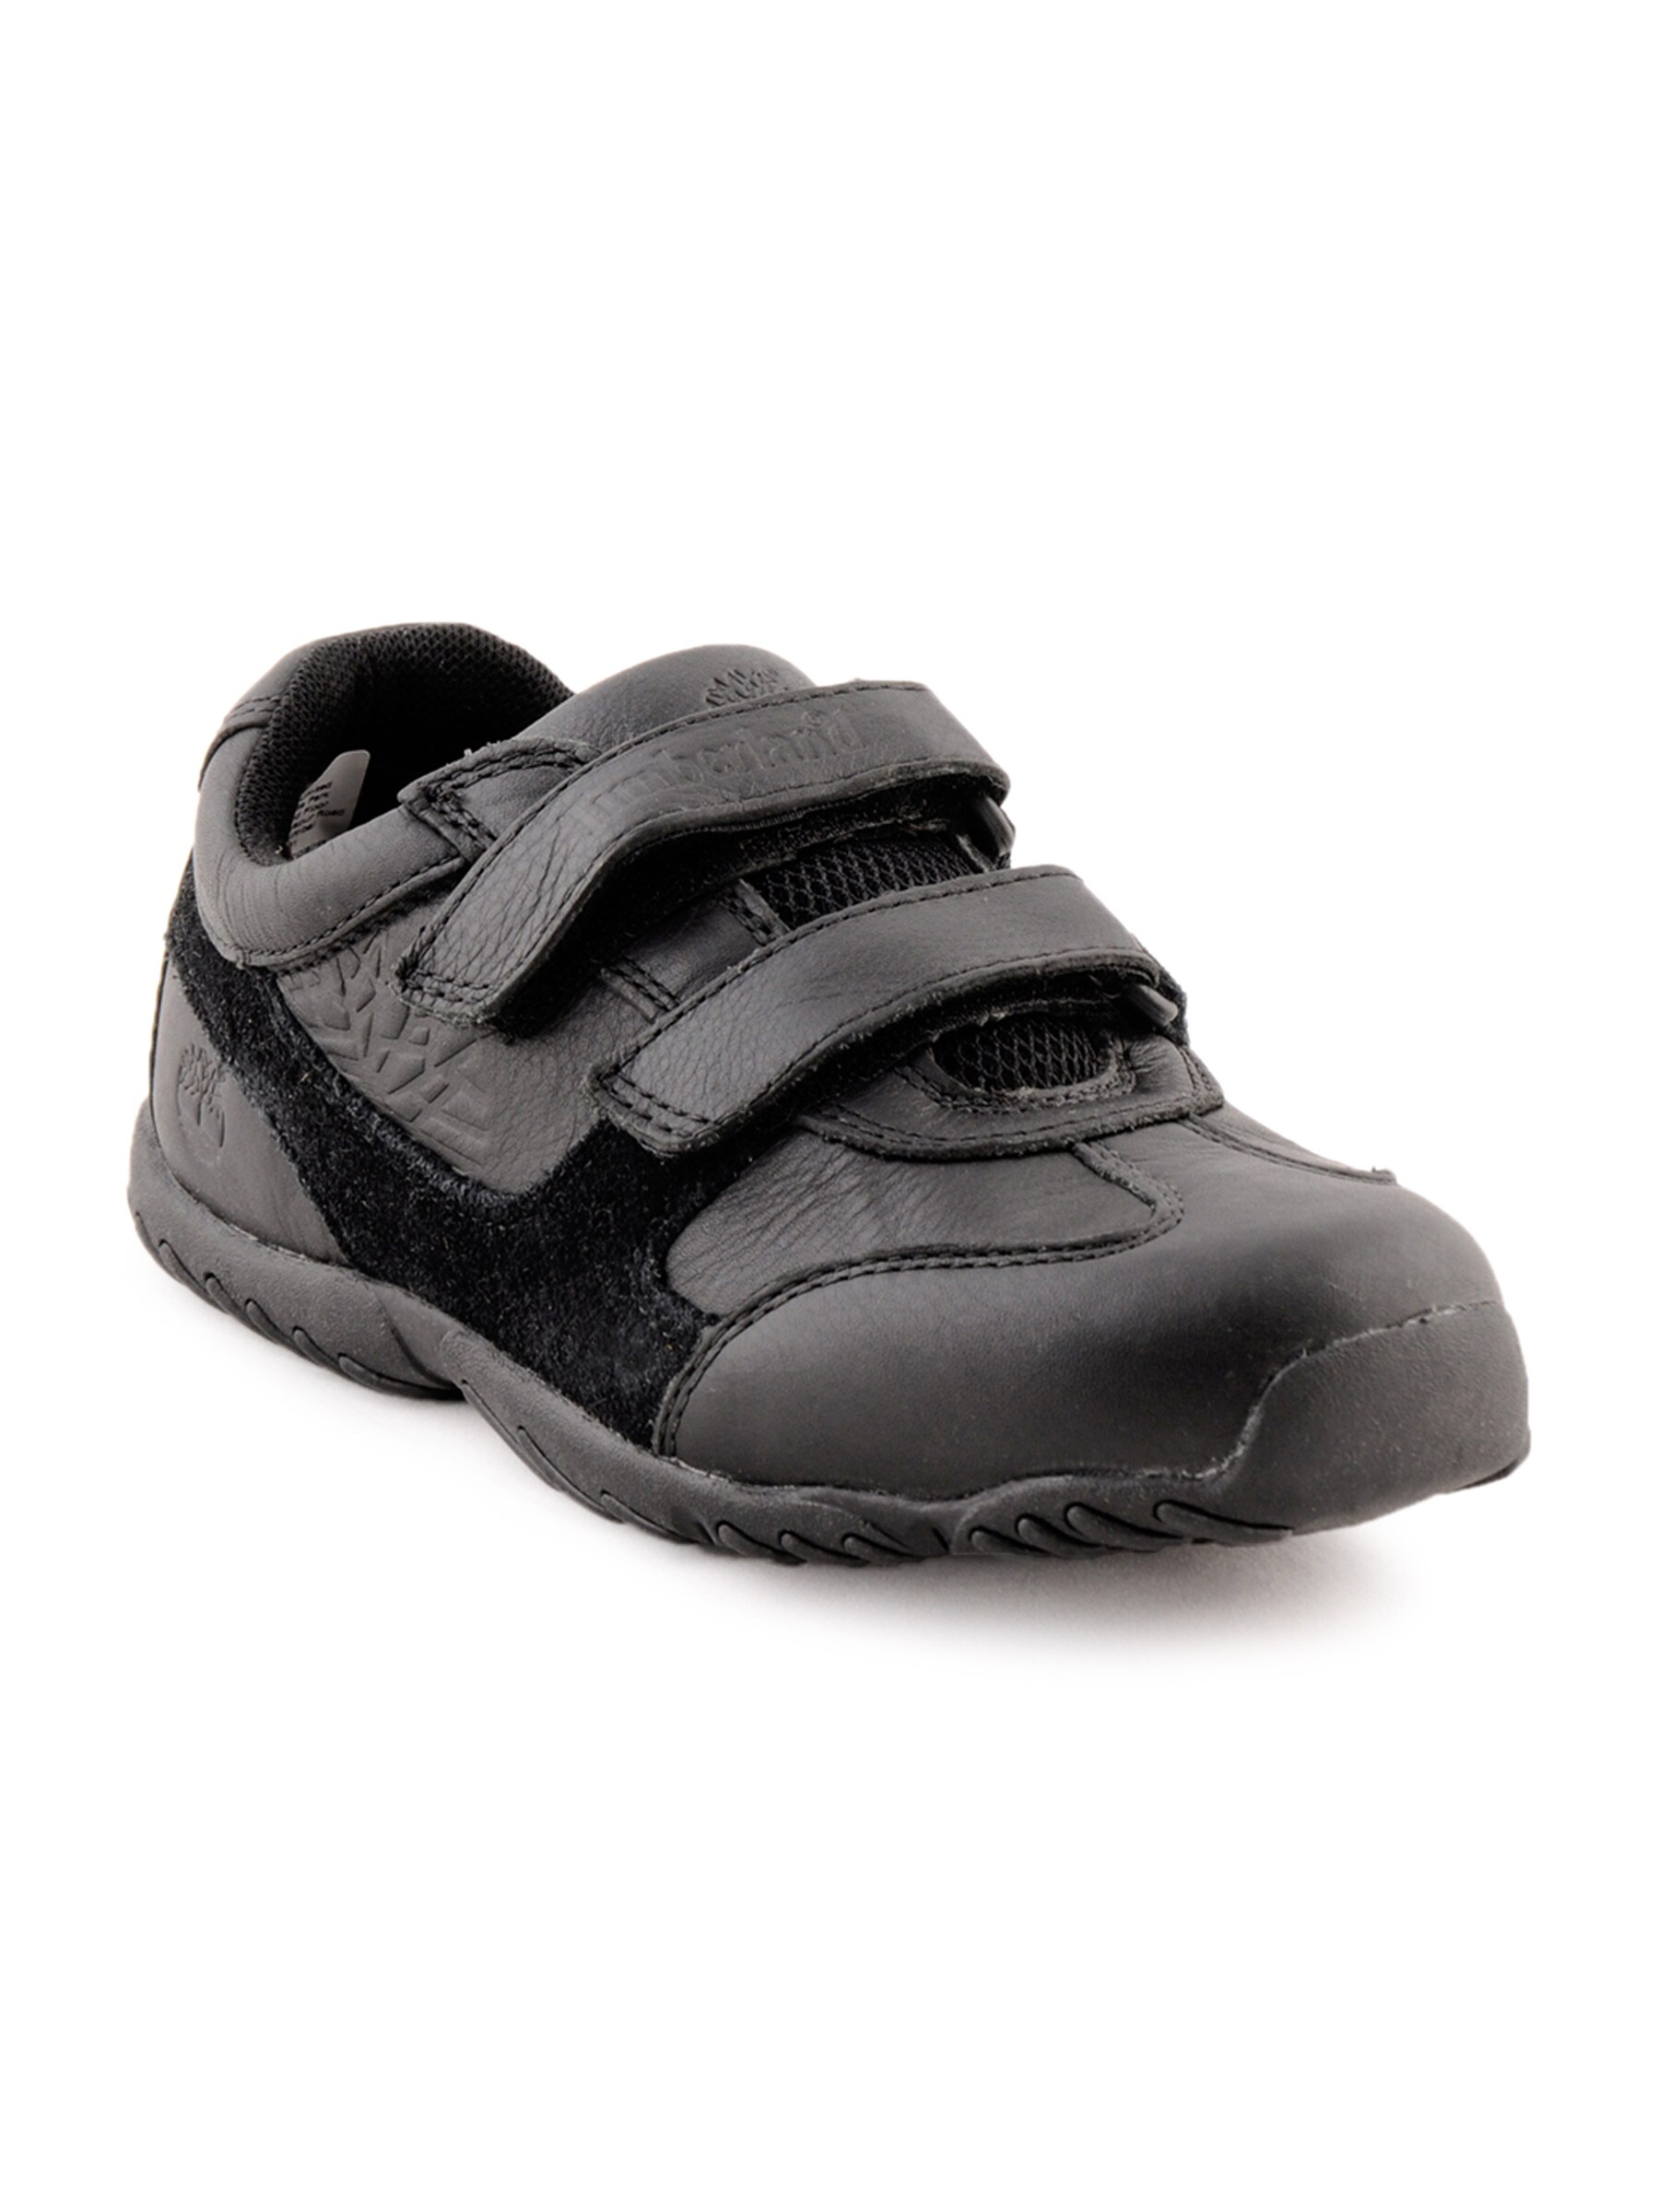 Timberland Kids Jeunes Black Casual Shoes